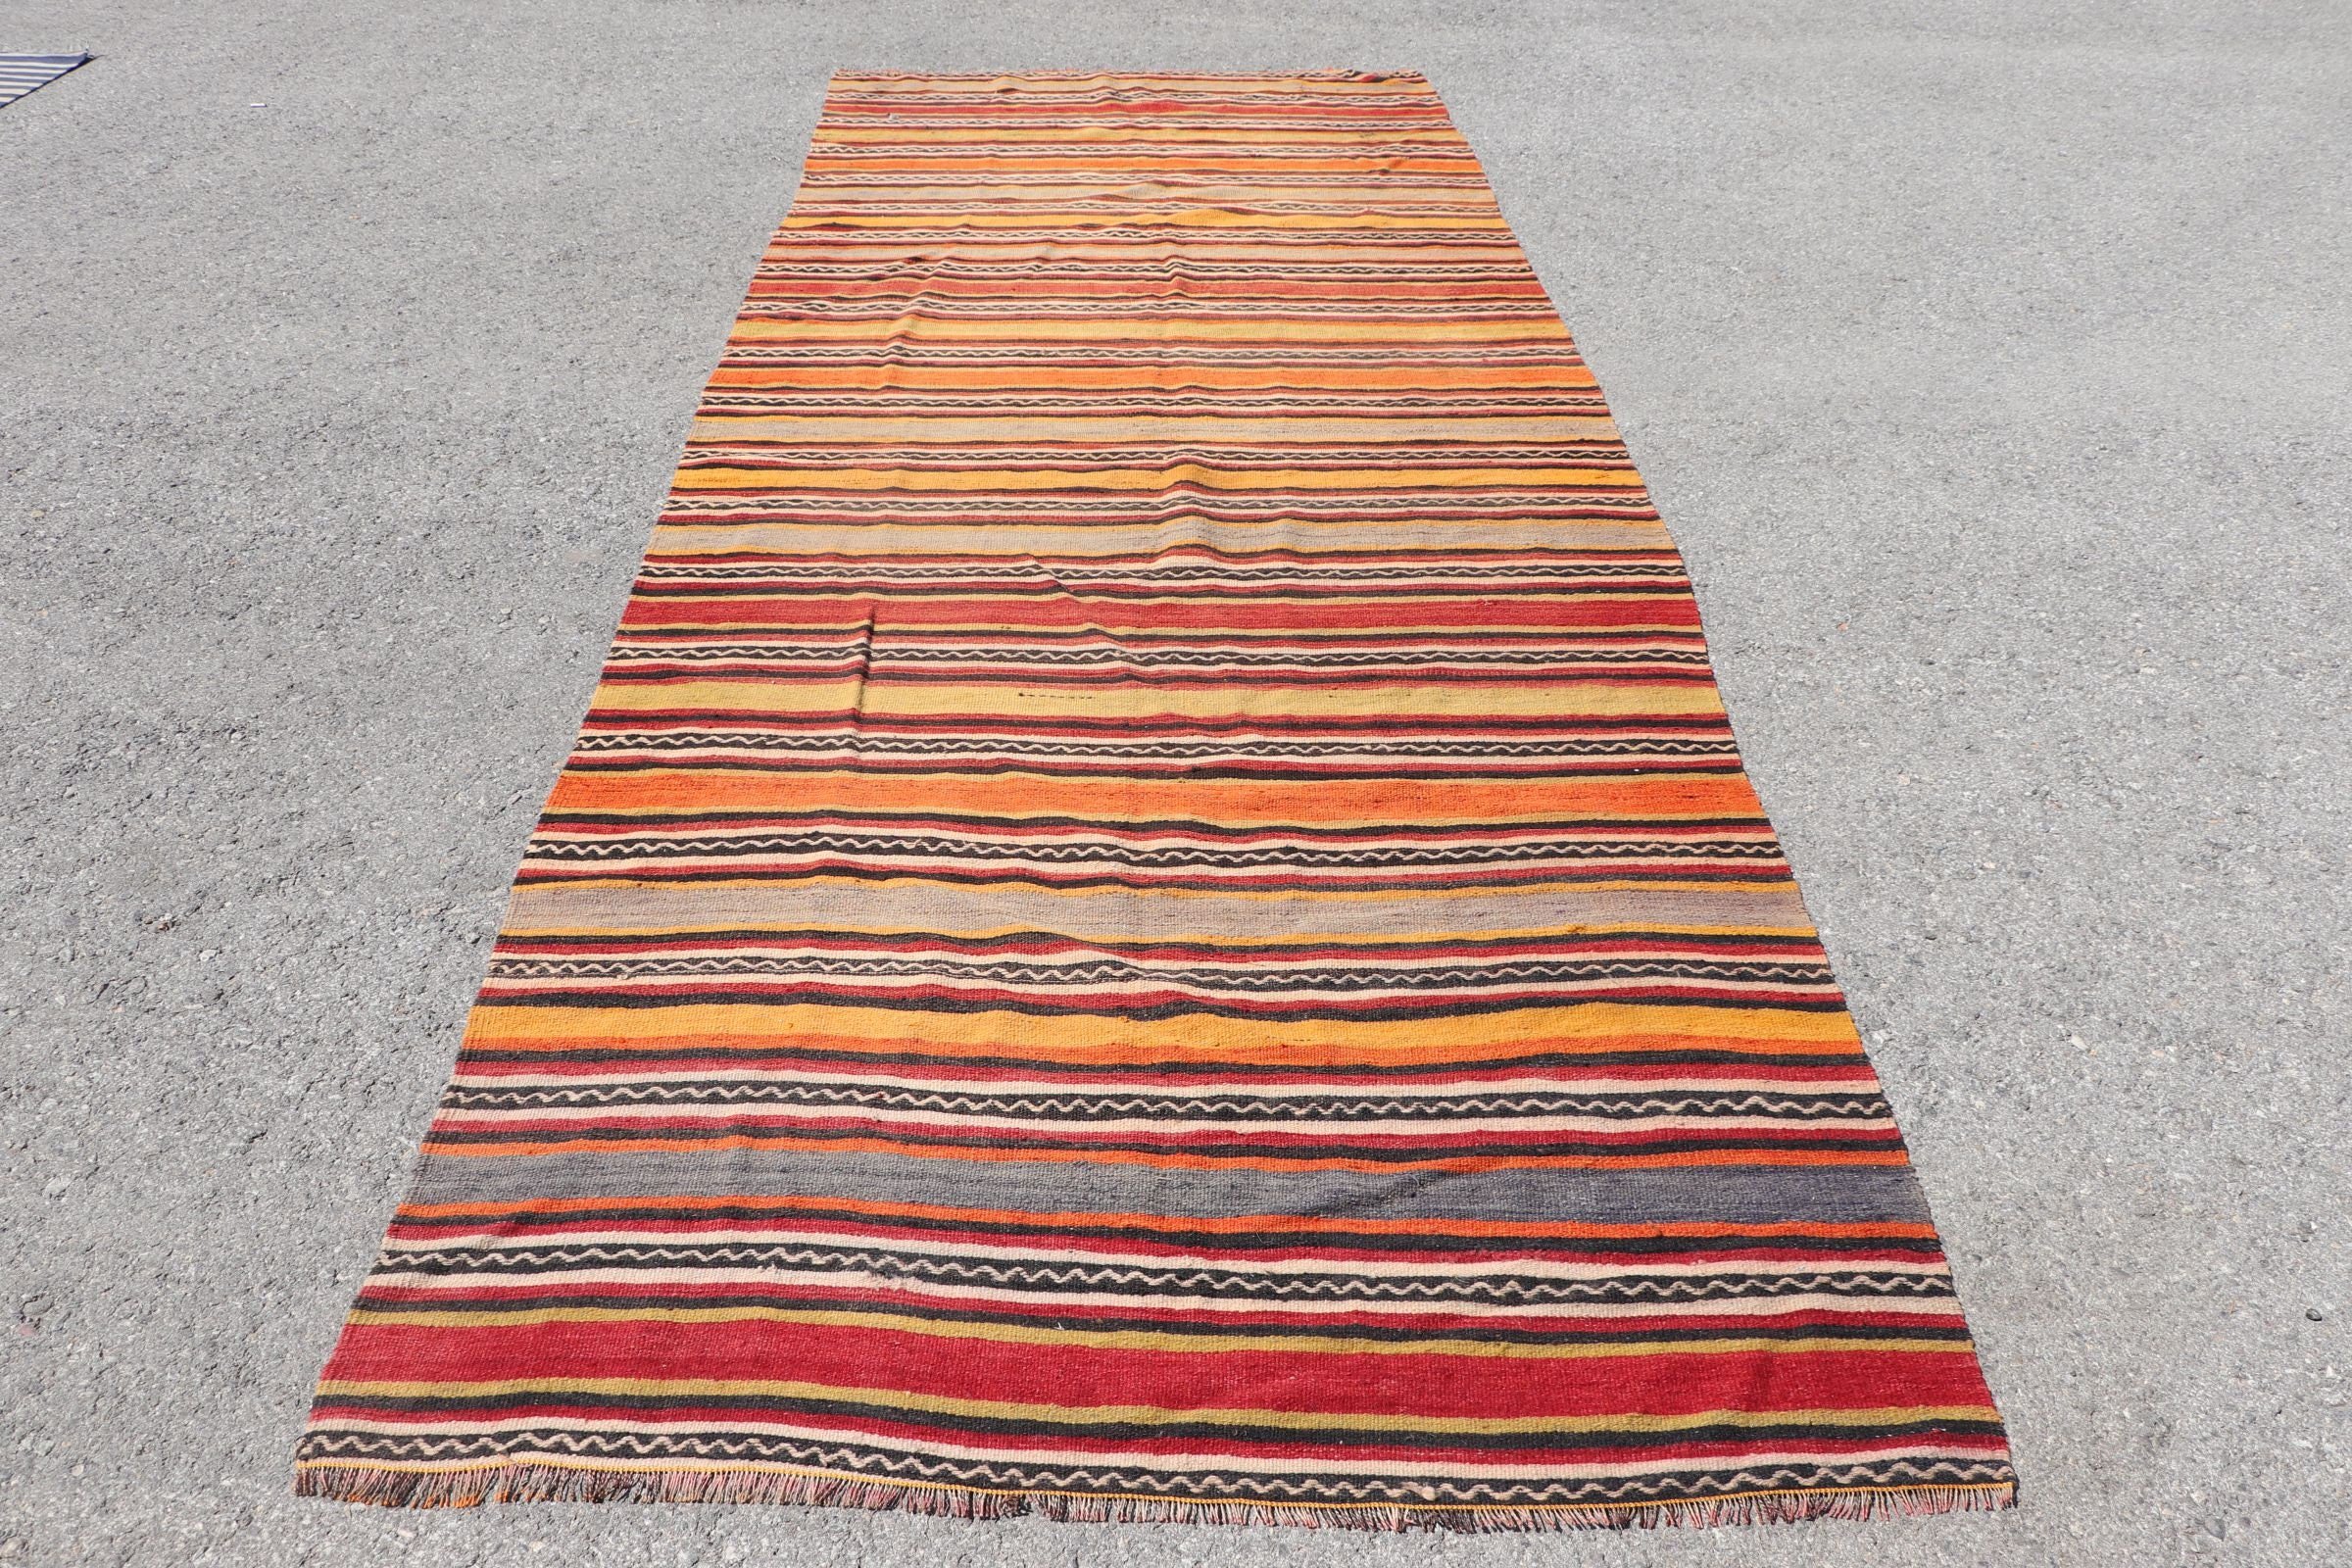 Turkish Rug, Cool Rugs, Vintage Rug, Rugs for Stair, Kilim, 4.6x13.1 ft Runner Rug, Pale Rug, Orange Wool Rug, Anatolian Rugs, Stair Rugs